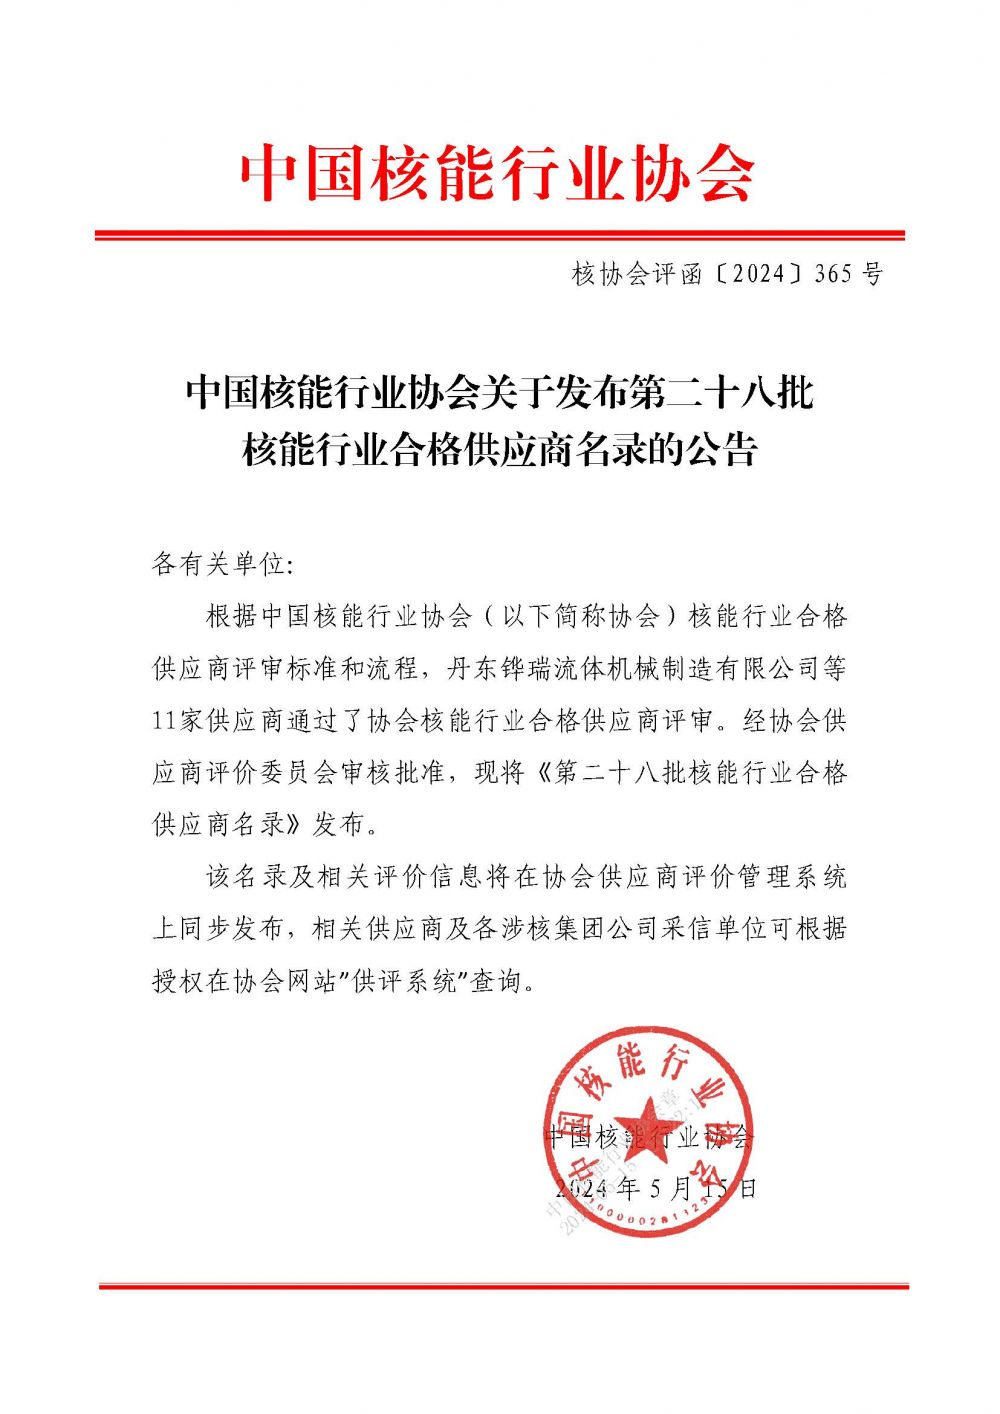 中国核能行业协会关于发布第二十八批核能行业合格供应商名录的公告_页面_1.jpg